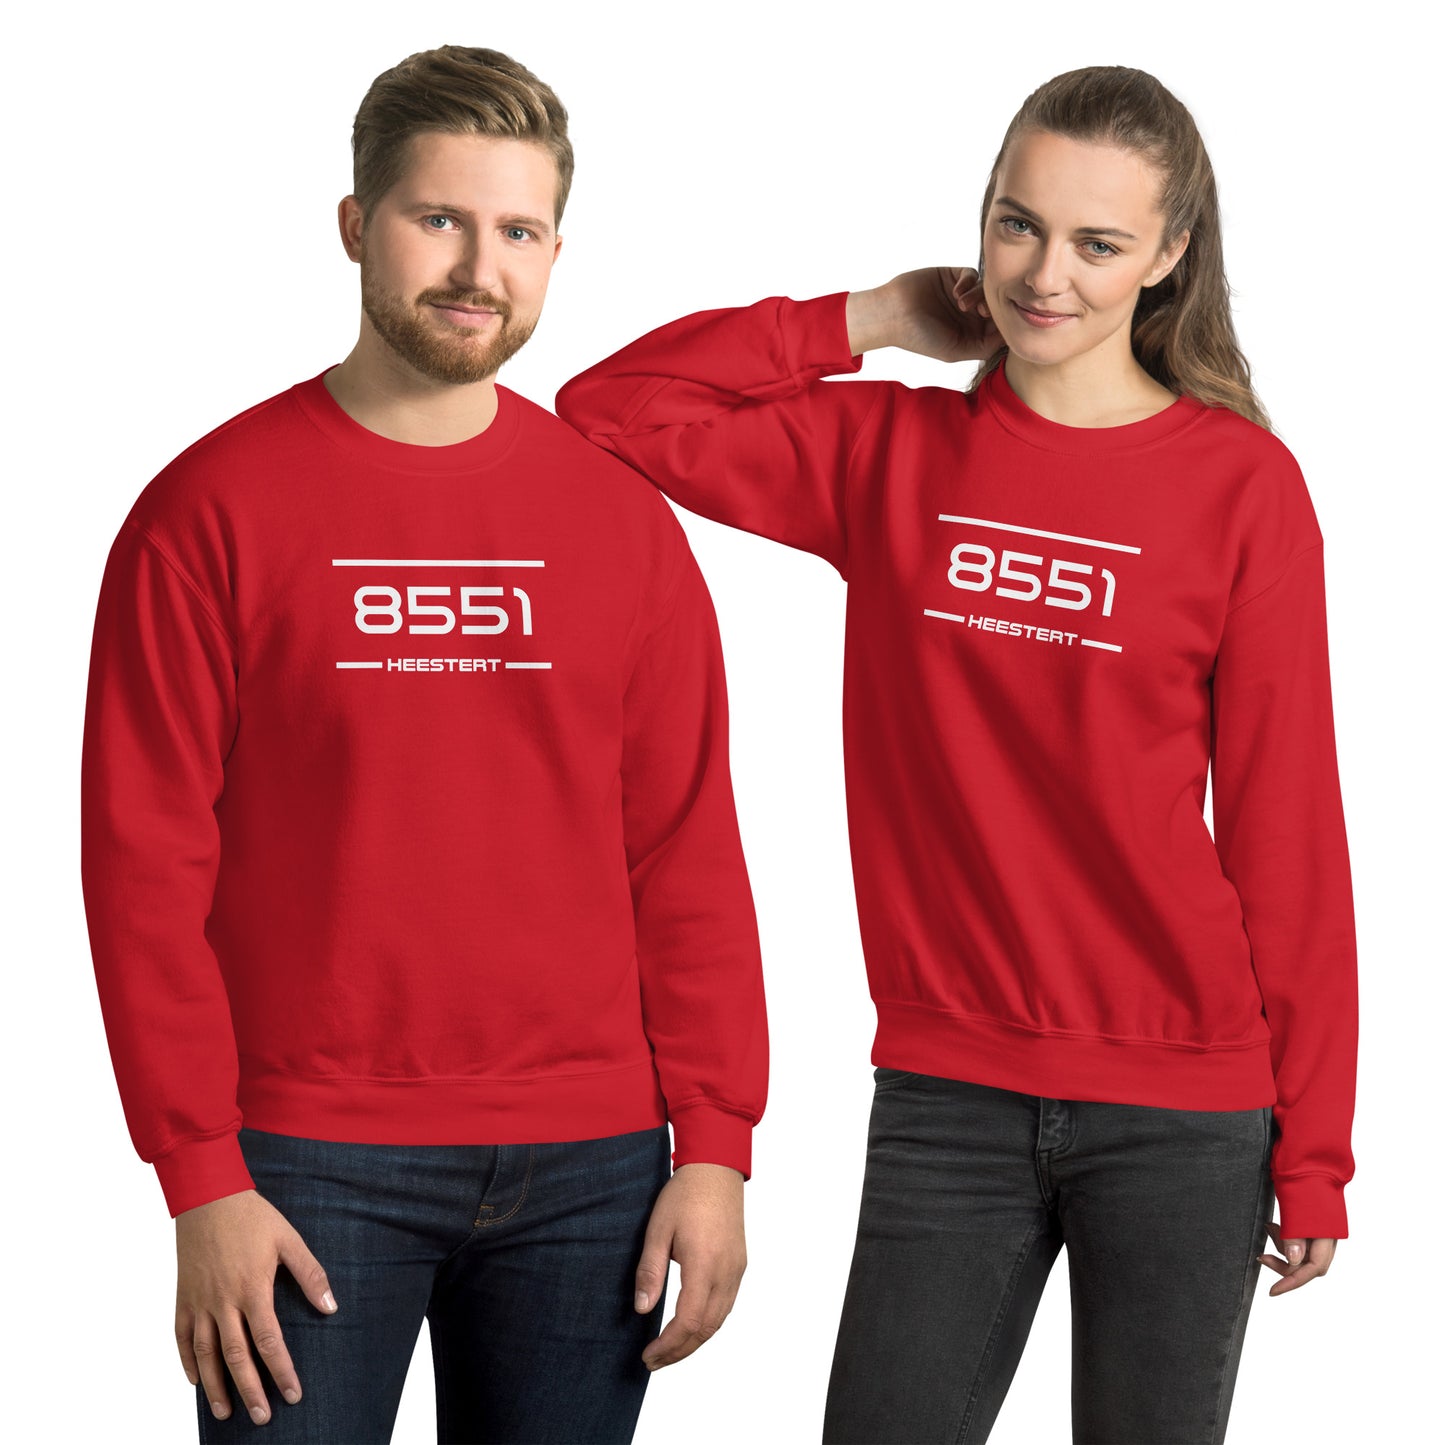 Sweater - 8551 - Heestert (M/V)